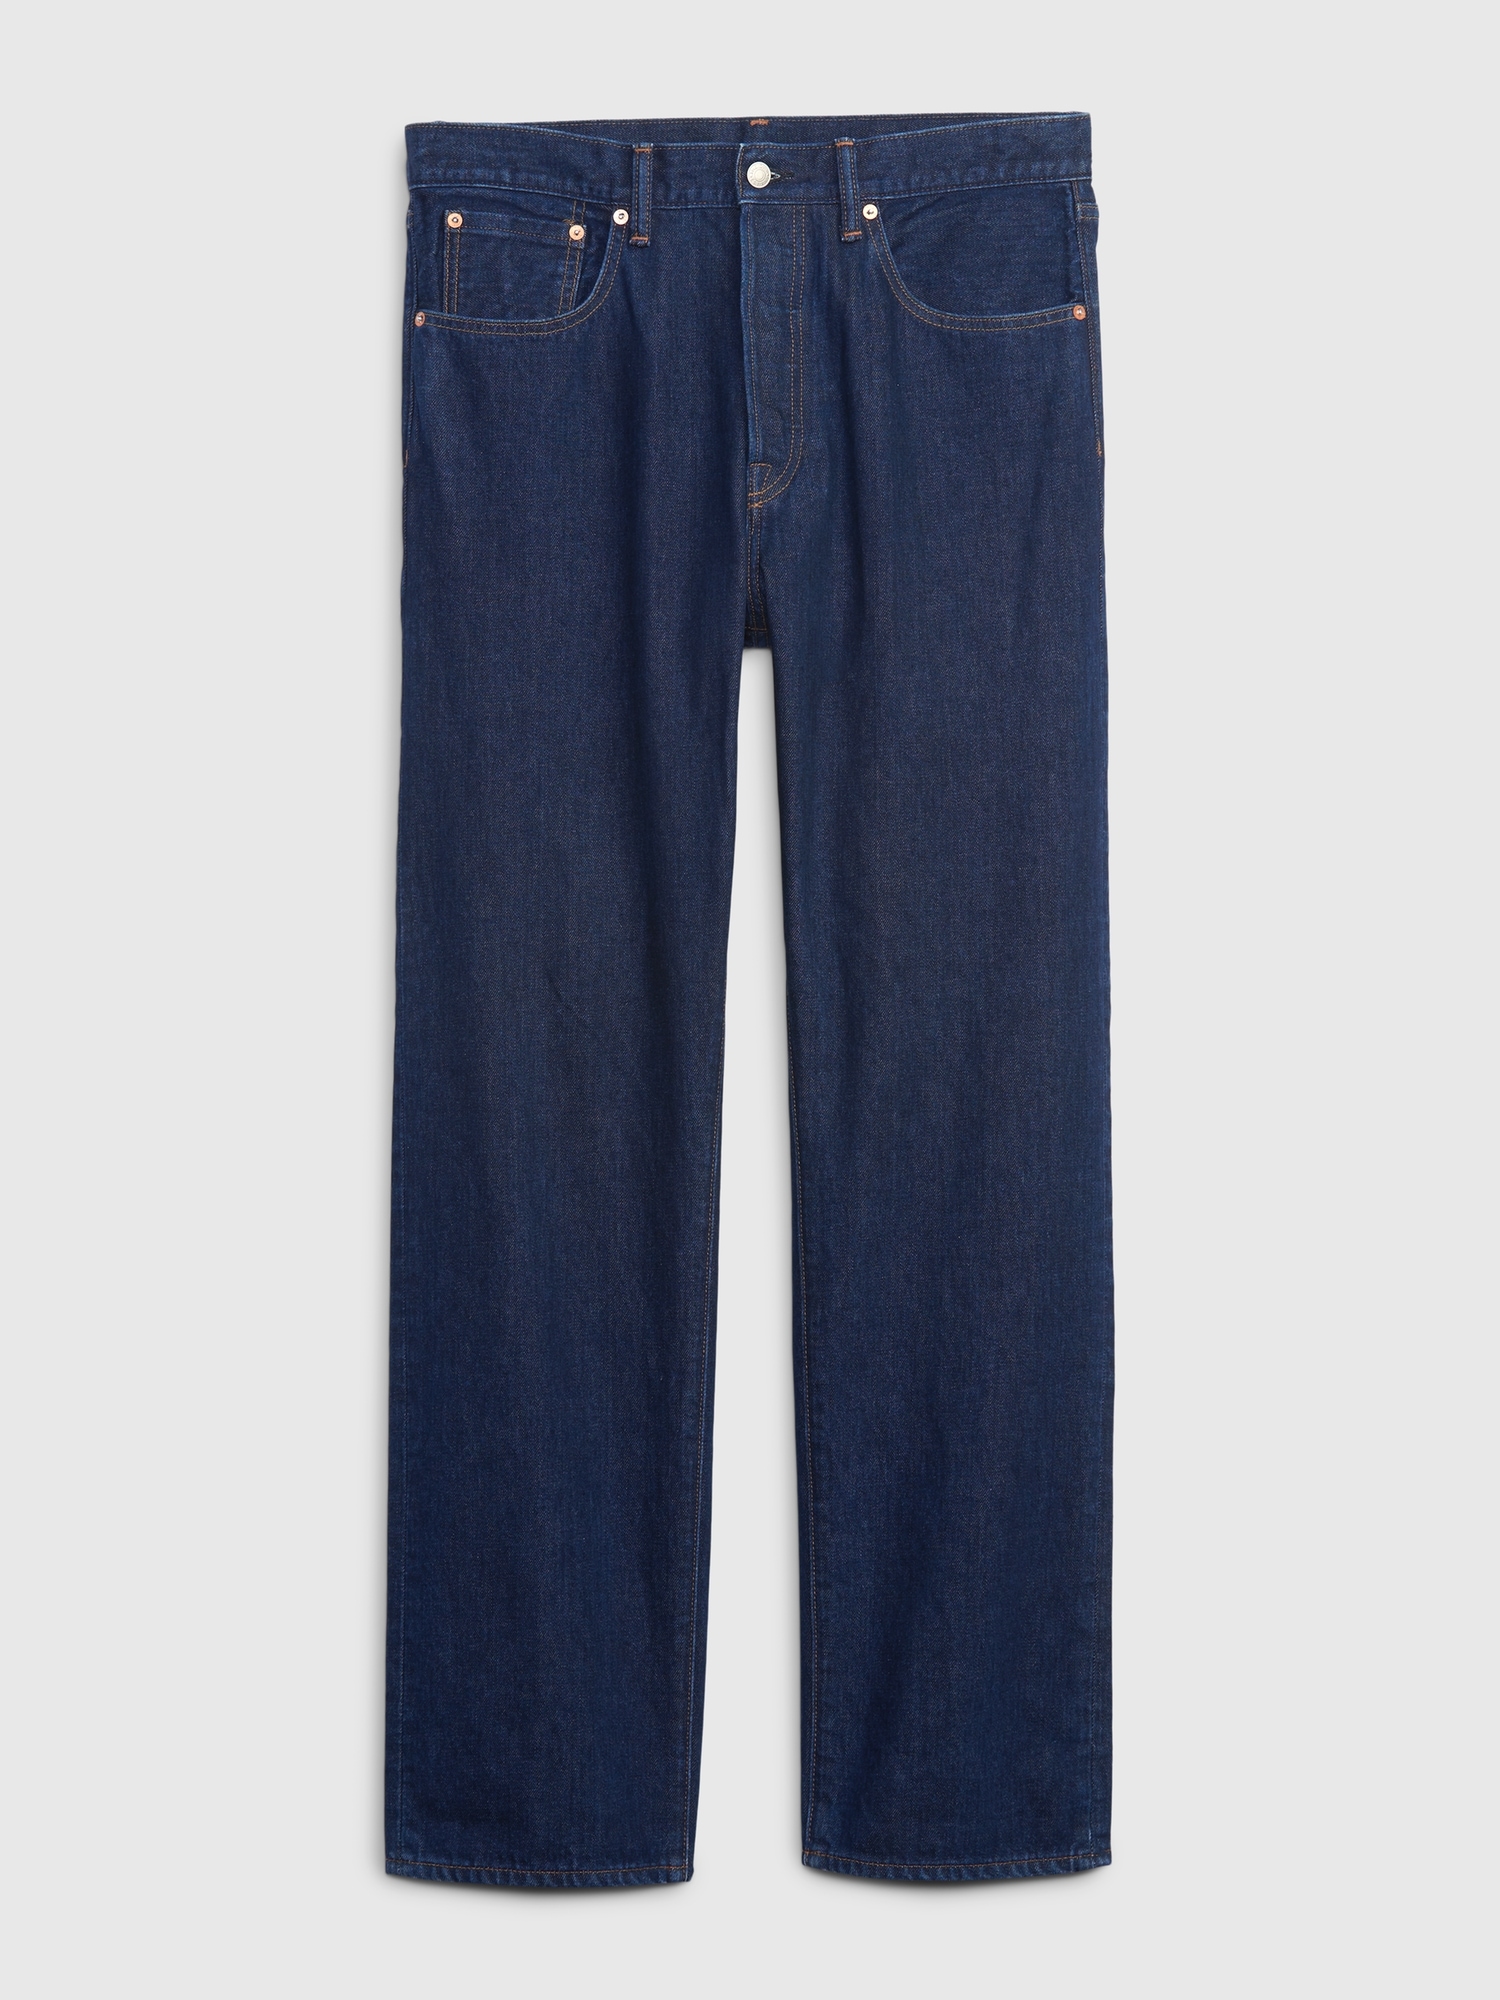 Vintage 90s Gap Denim Jeans 31x28 Med Wash Relaxed Fit Tapered Leg 5 Pocket  -  Israel